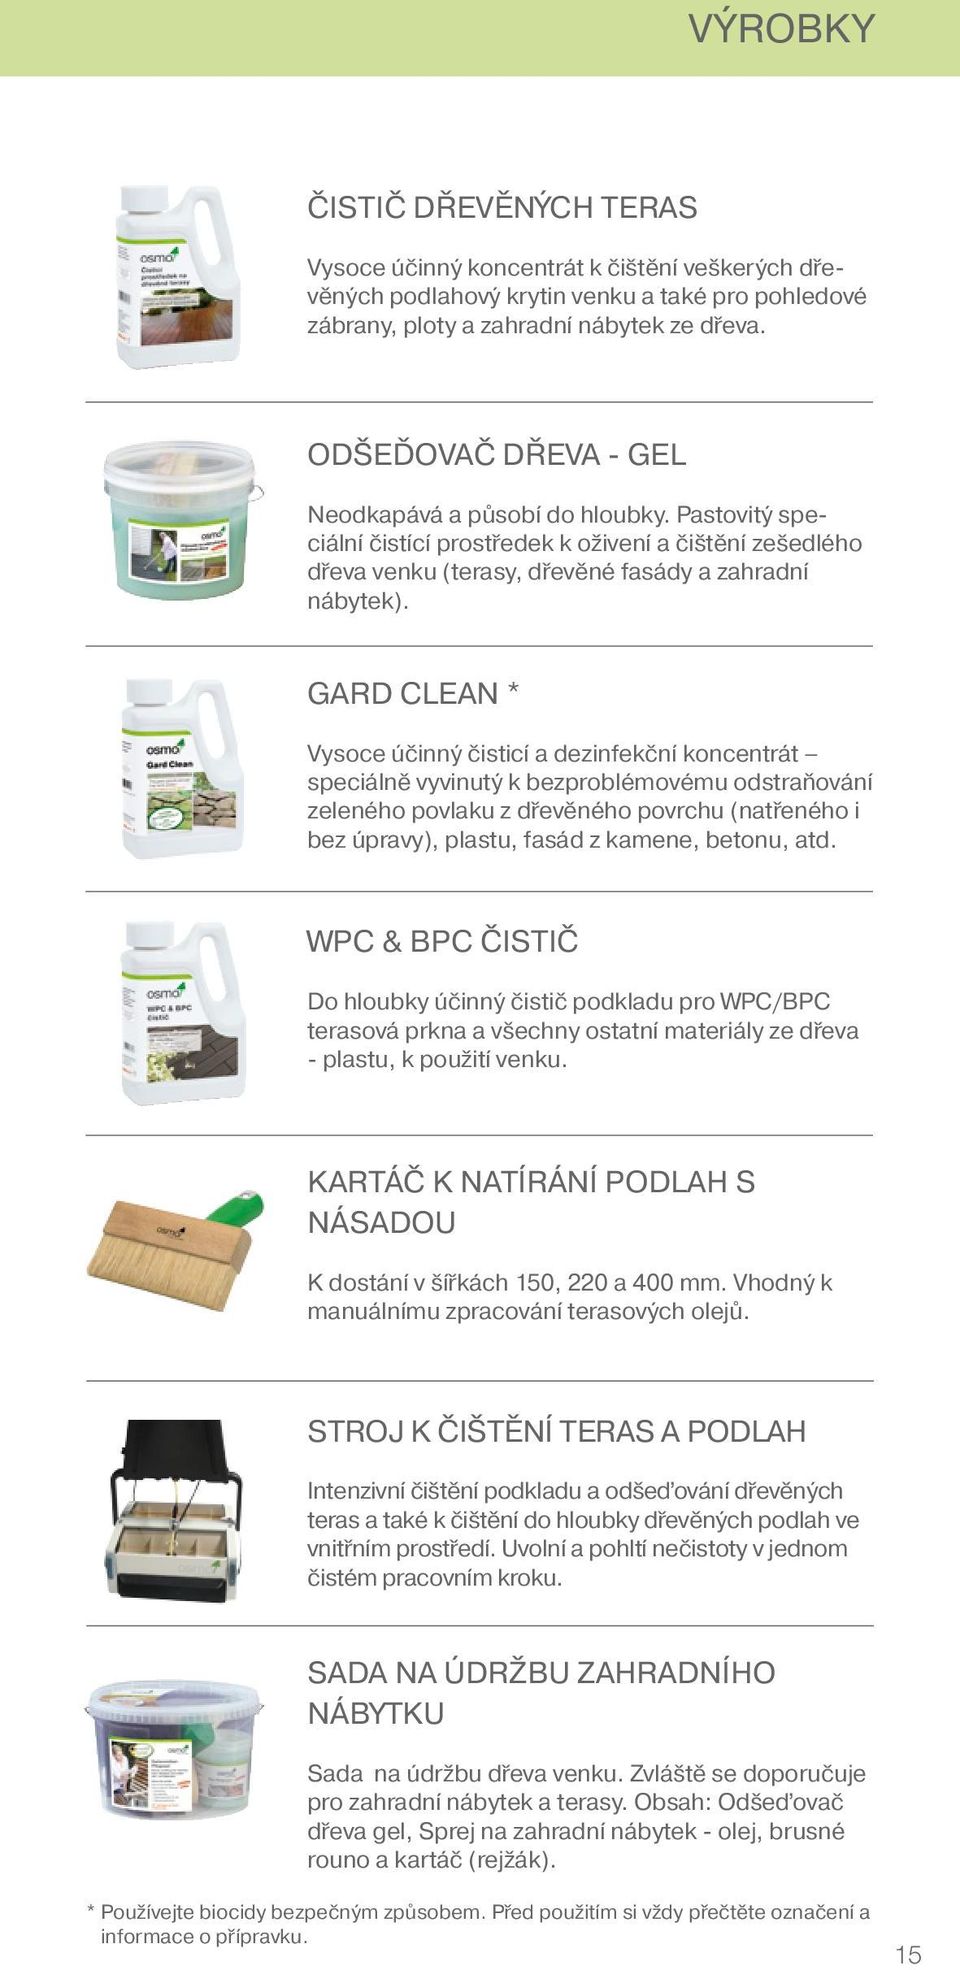 GARD CLEAN * Vysoce účinný čisticí a dezinfekční koncentrát speciálně vyvinutý k bezproblémovému odstraňování zeleného povlaku z dřevěného povrchu (natřeného i bez úpravy), plastu, fasád z kamene,